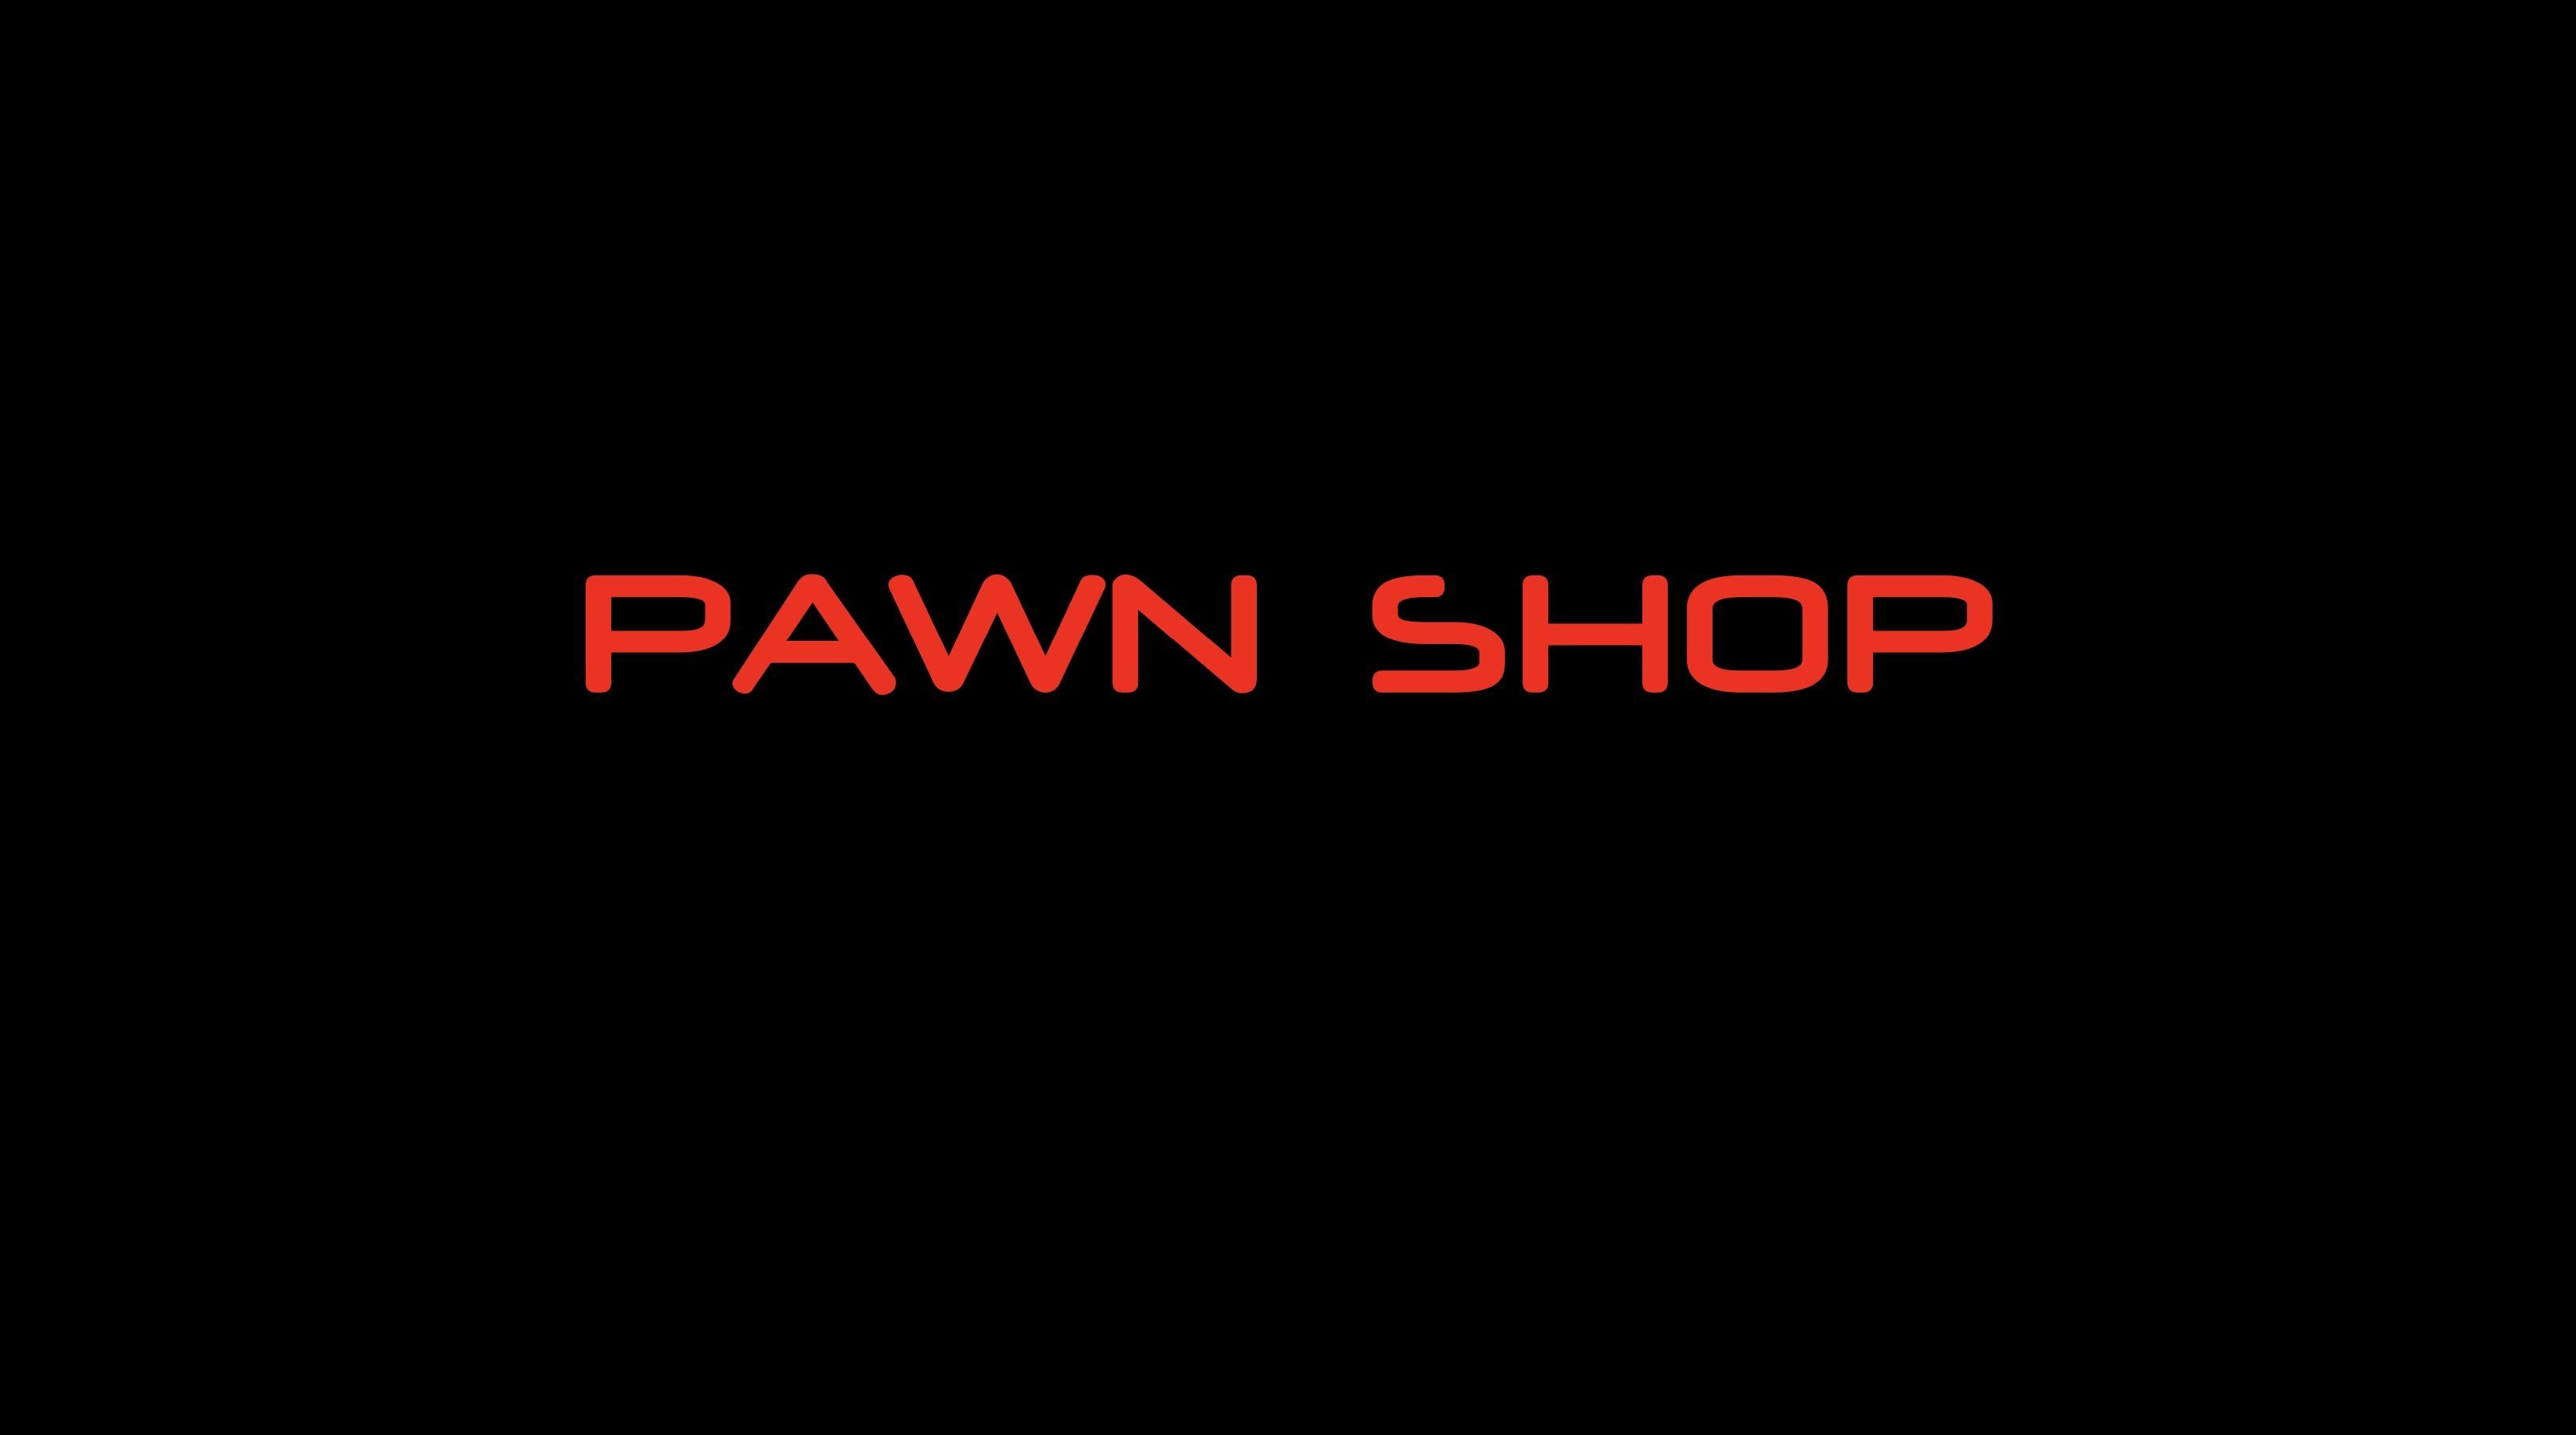 Foto de Pawn Shop franquicias de éxito